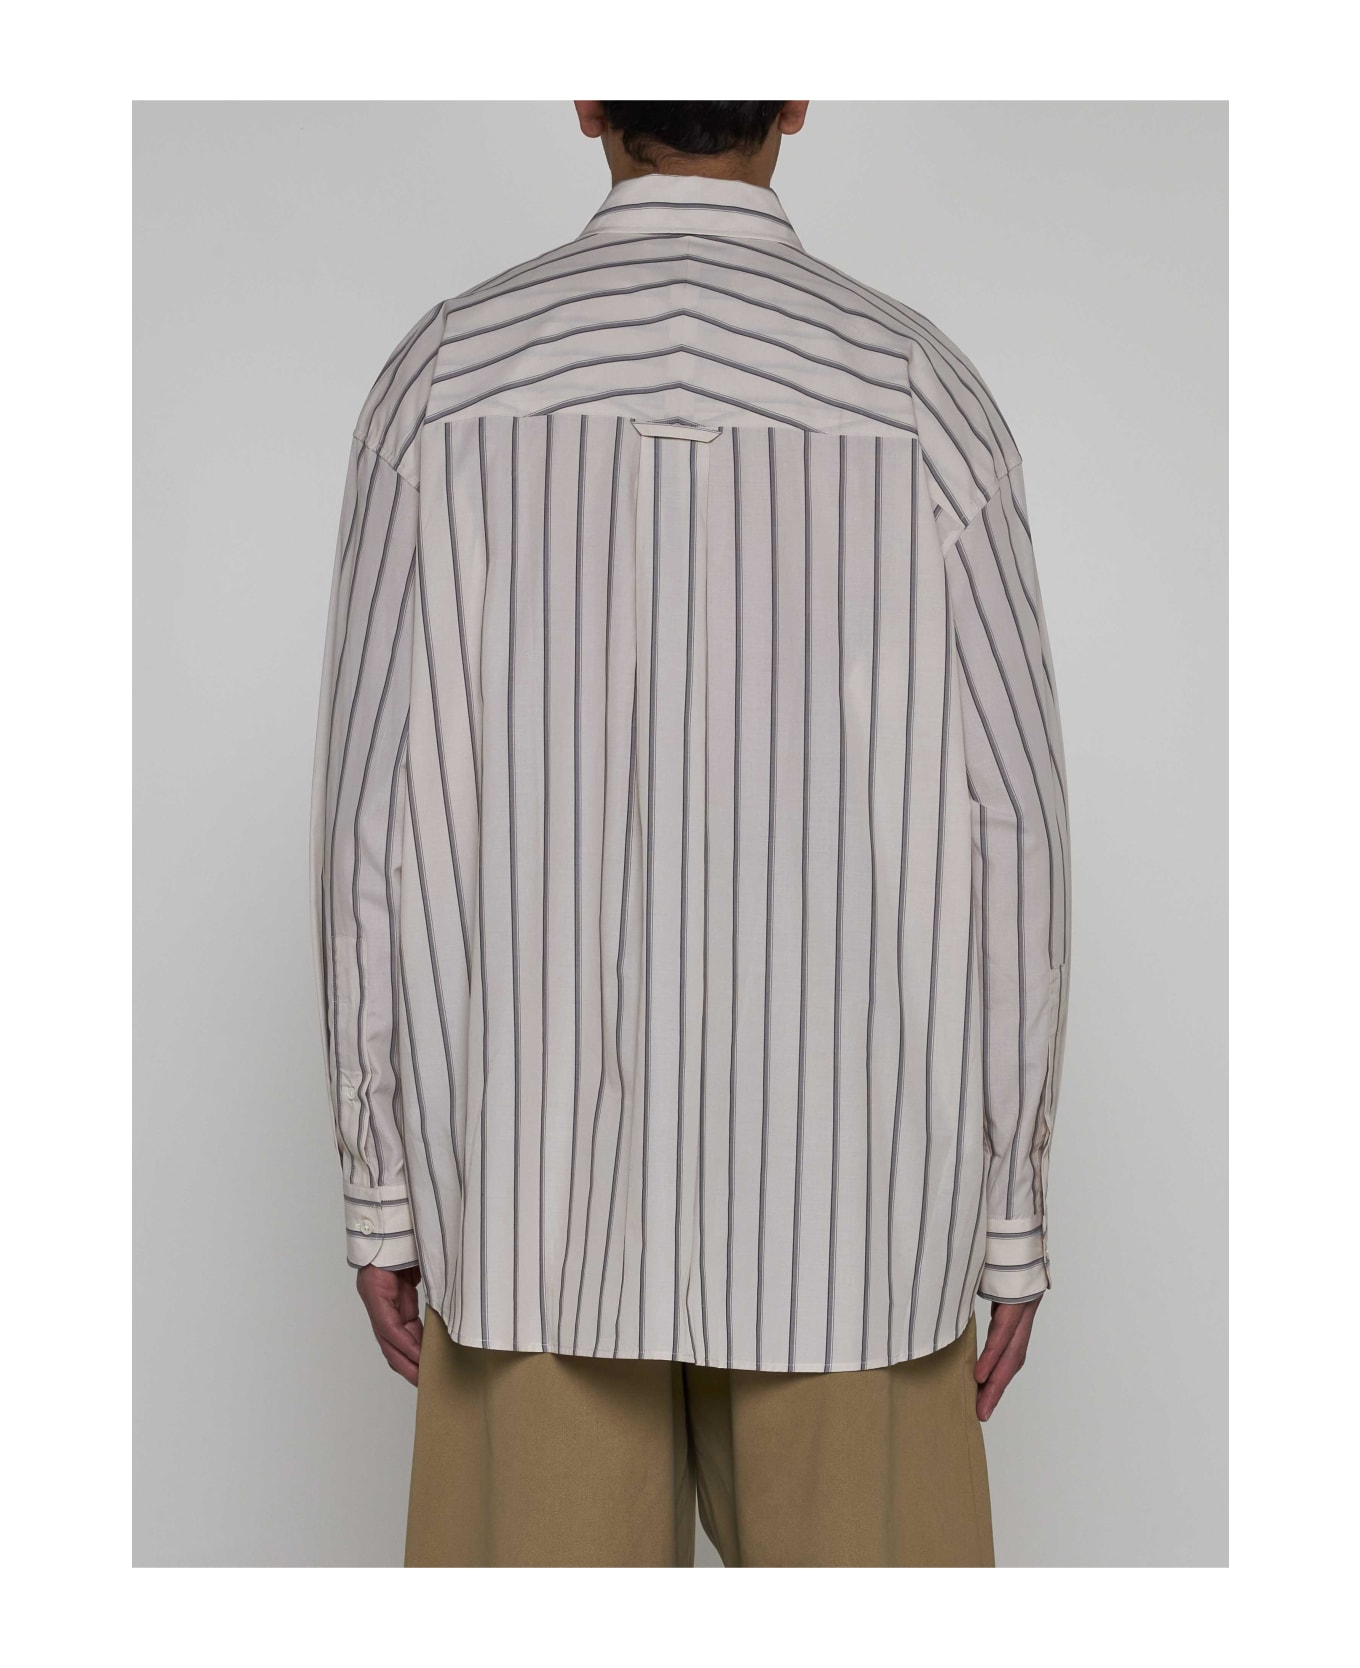 Studio Nicholson Loche Pinstriped Cotton Shirt - BEIGE シャツ